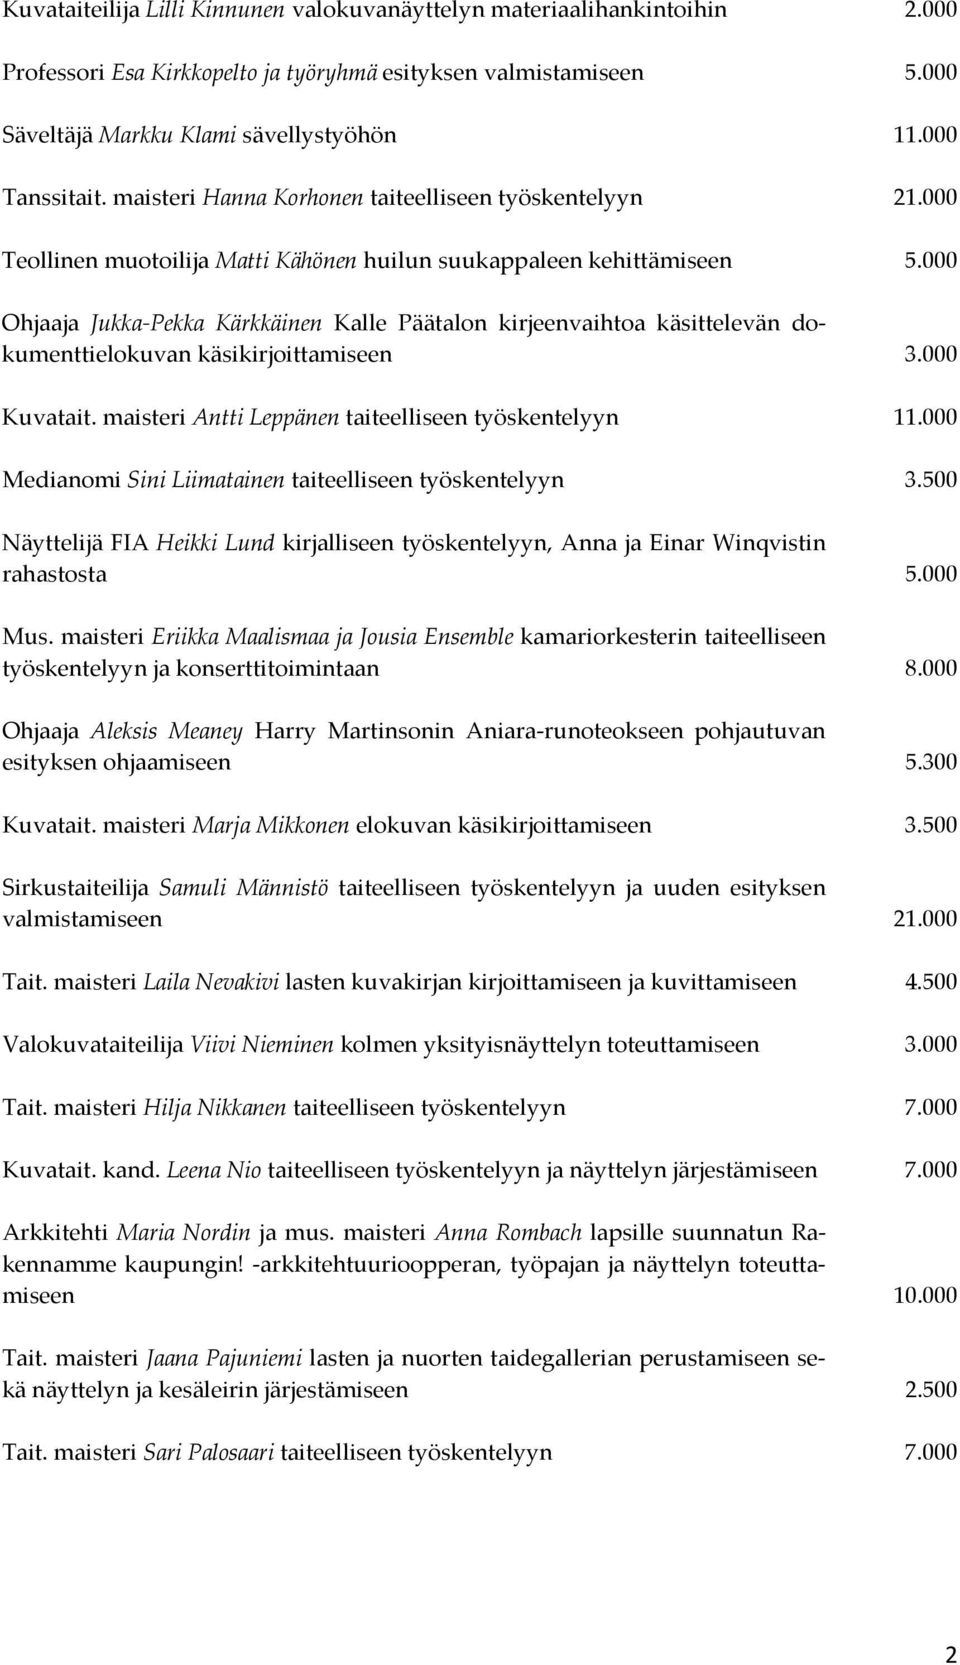 000 Ohjaaja Jukka-Pekka Kärkkäinen Kalle Päätalon kirjeenvaihtoa käsittelevän dokumenttielokuvan käsikirjoittamiseen 3.000 Kuvatait. maisteri Antti Leppänen taiteelliseen työskentelyyn 11.